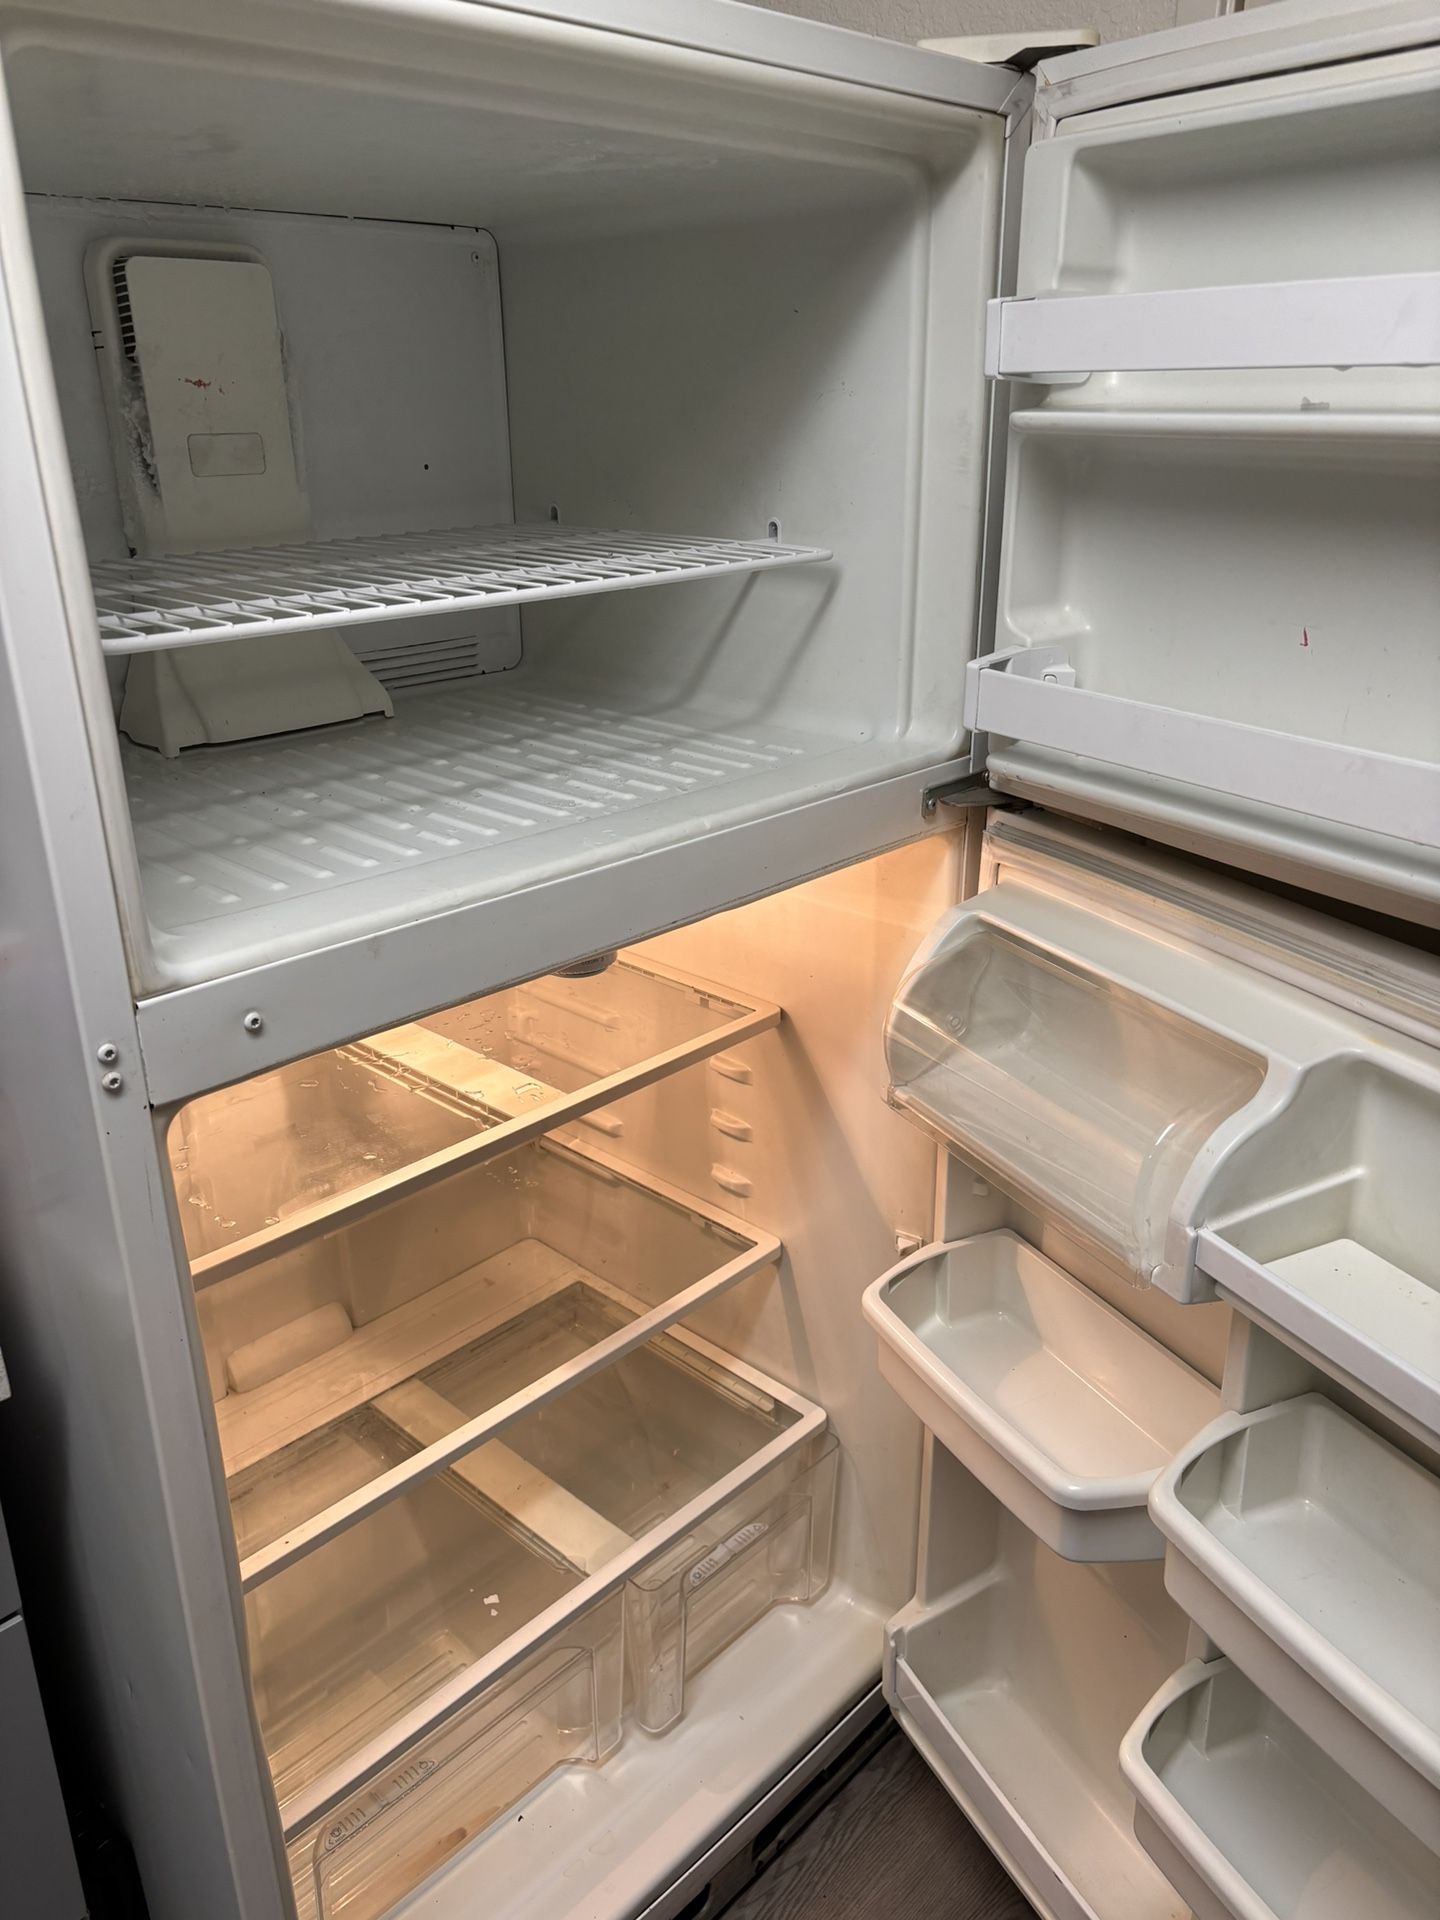 Free Refrigerator READ Full Description!!! Please! ✨STILL AVAILABLE ✨